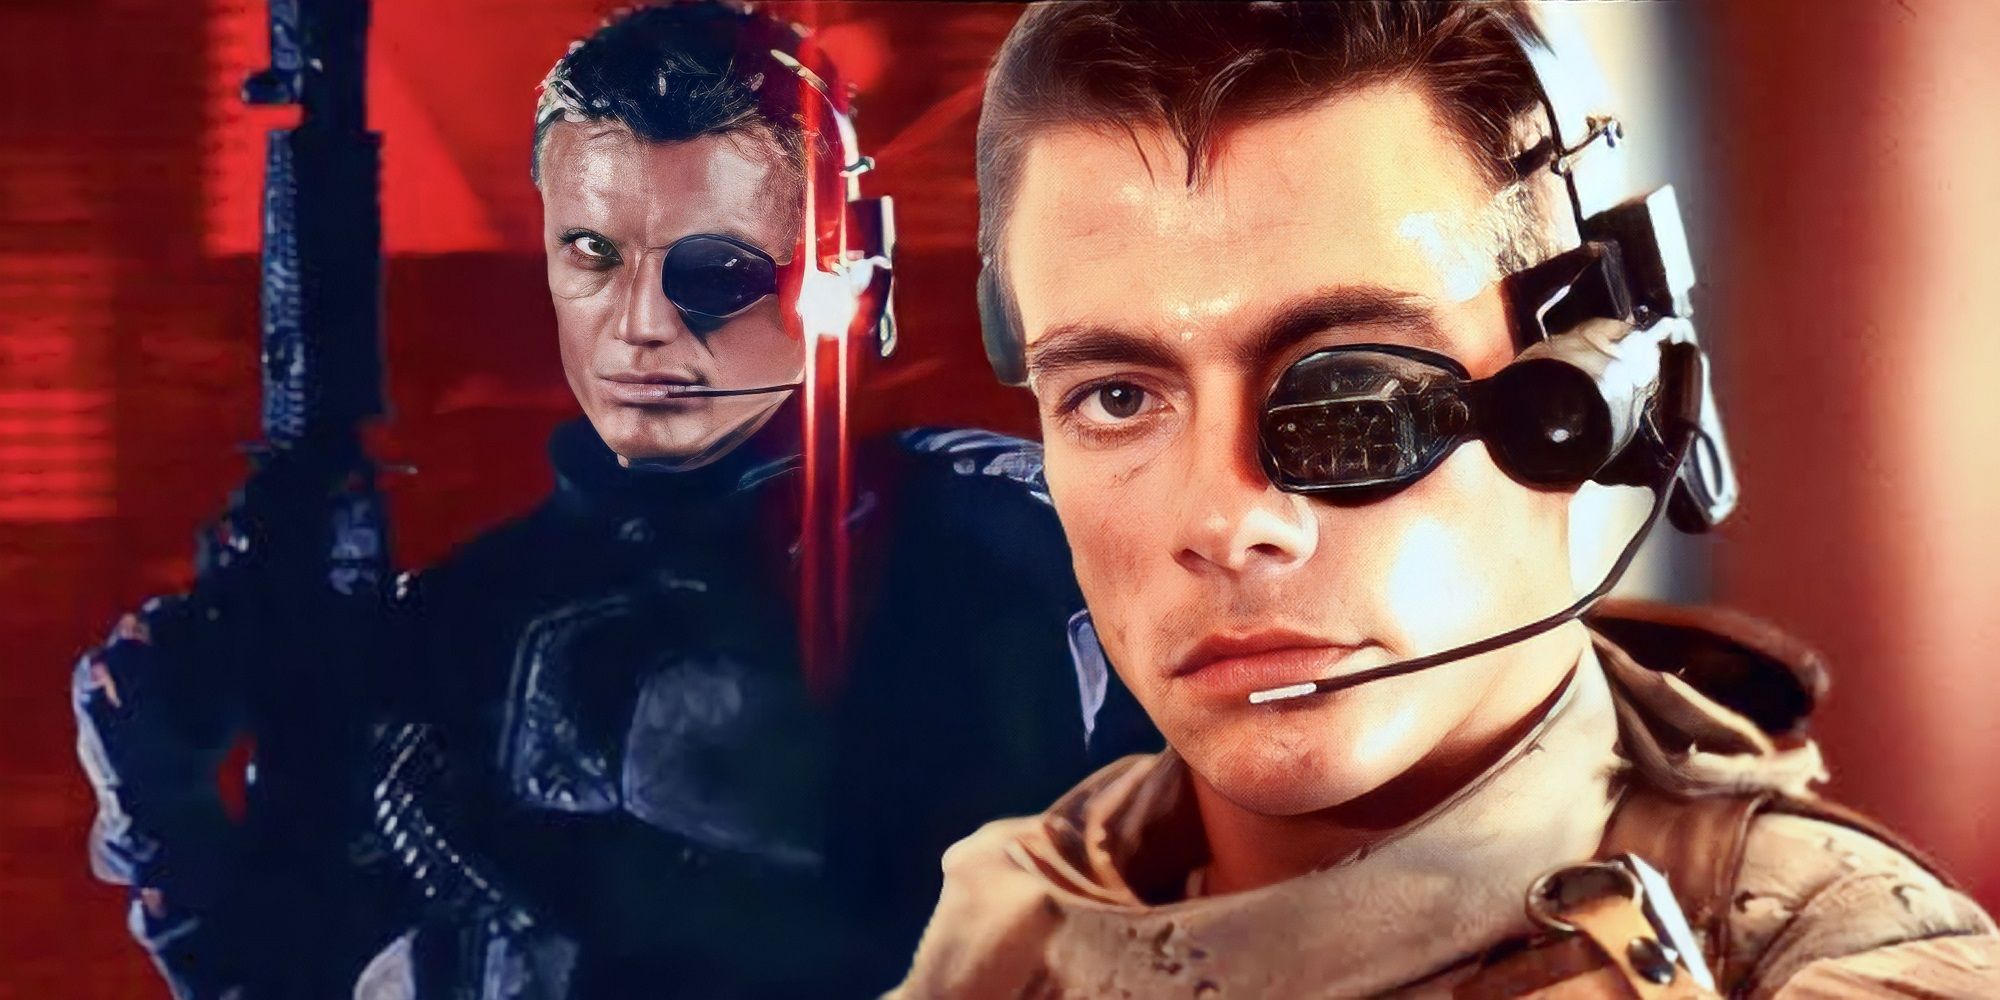  Dolph Lundgren and Jean-Claude Van Damme Universal Soldier Reboot